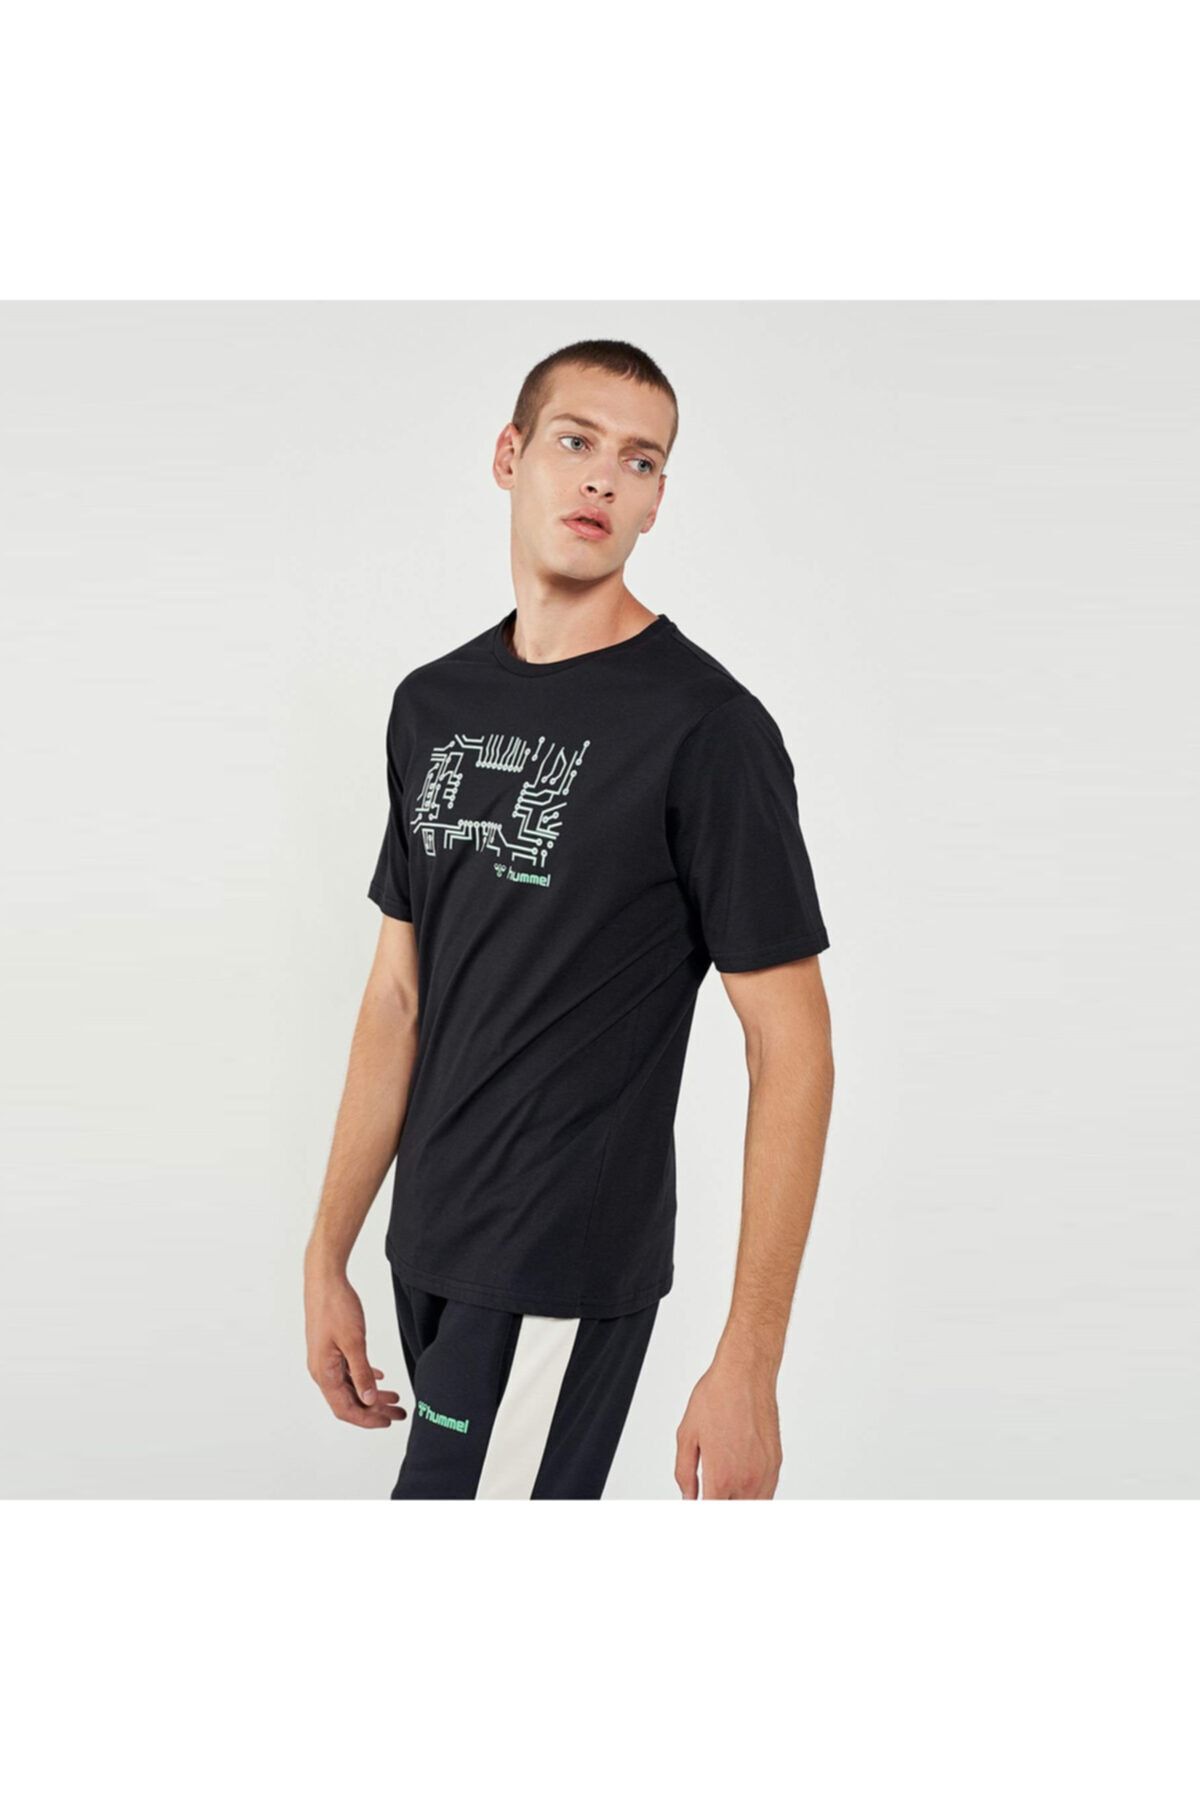 HUMMEL Erkek Siyah Spor T-Shirt Fiyatı, Yorumları - Trendyol